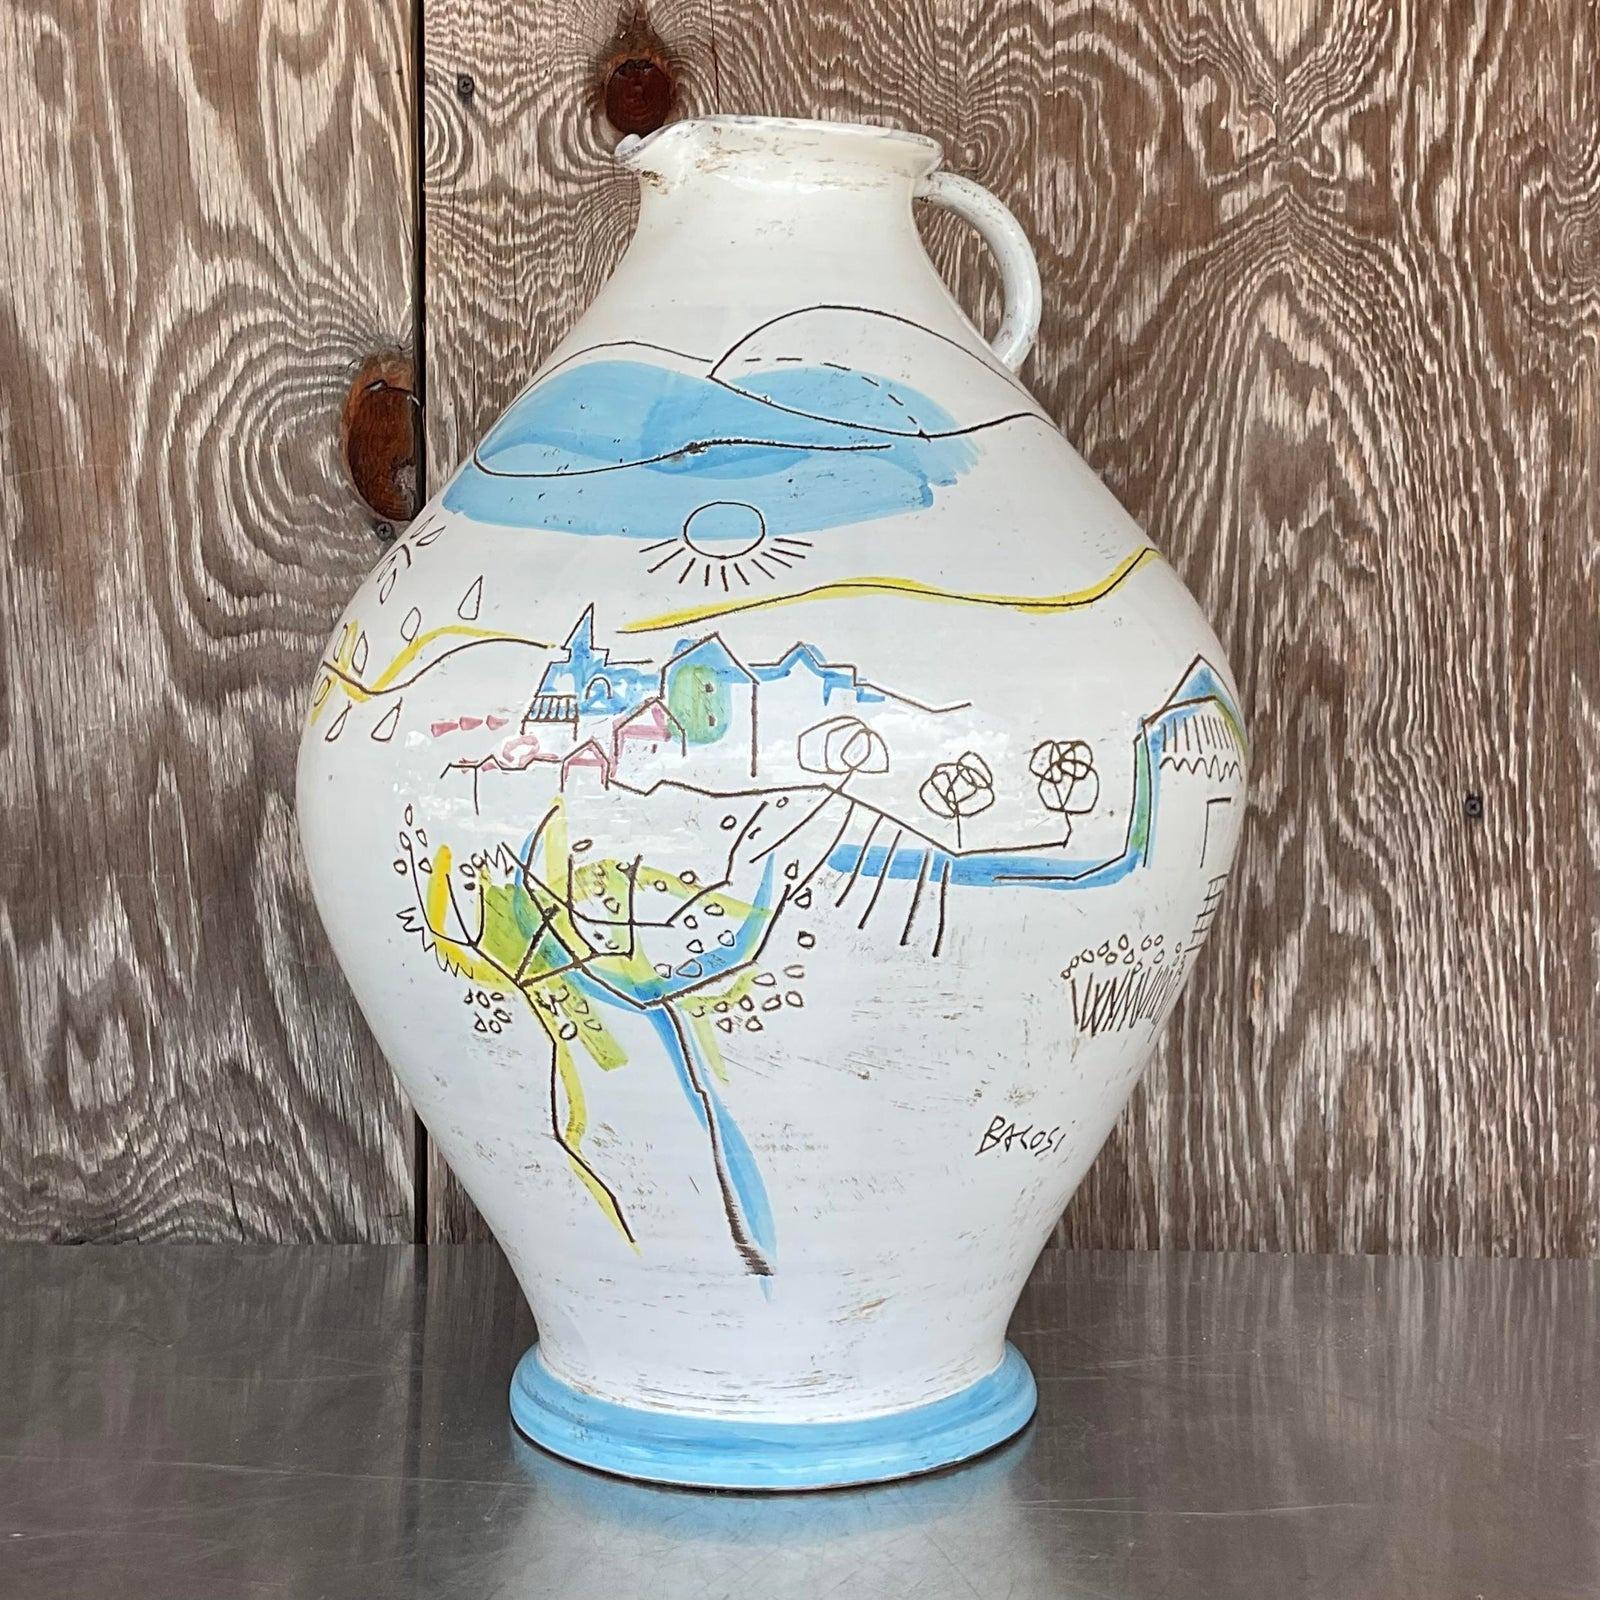 Ein fabelhafter Krug aus italienischer Keramik im Vintage-Stil. Geschaffen von dem sehr begehrten Manlio Bacosi. Signiert auf der Vase. Eine schöne pastorale Szene in hellen, klaren Farben. Erworben aus einem Nachlass in Palm Beach